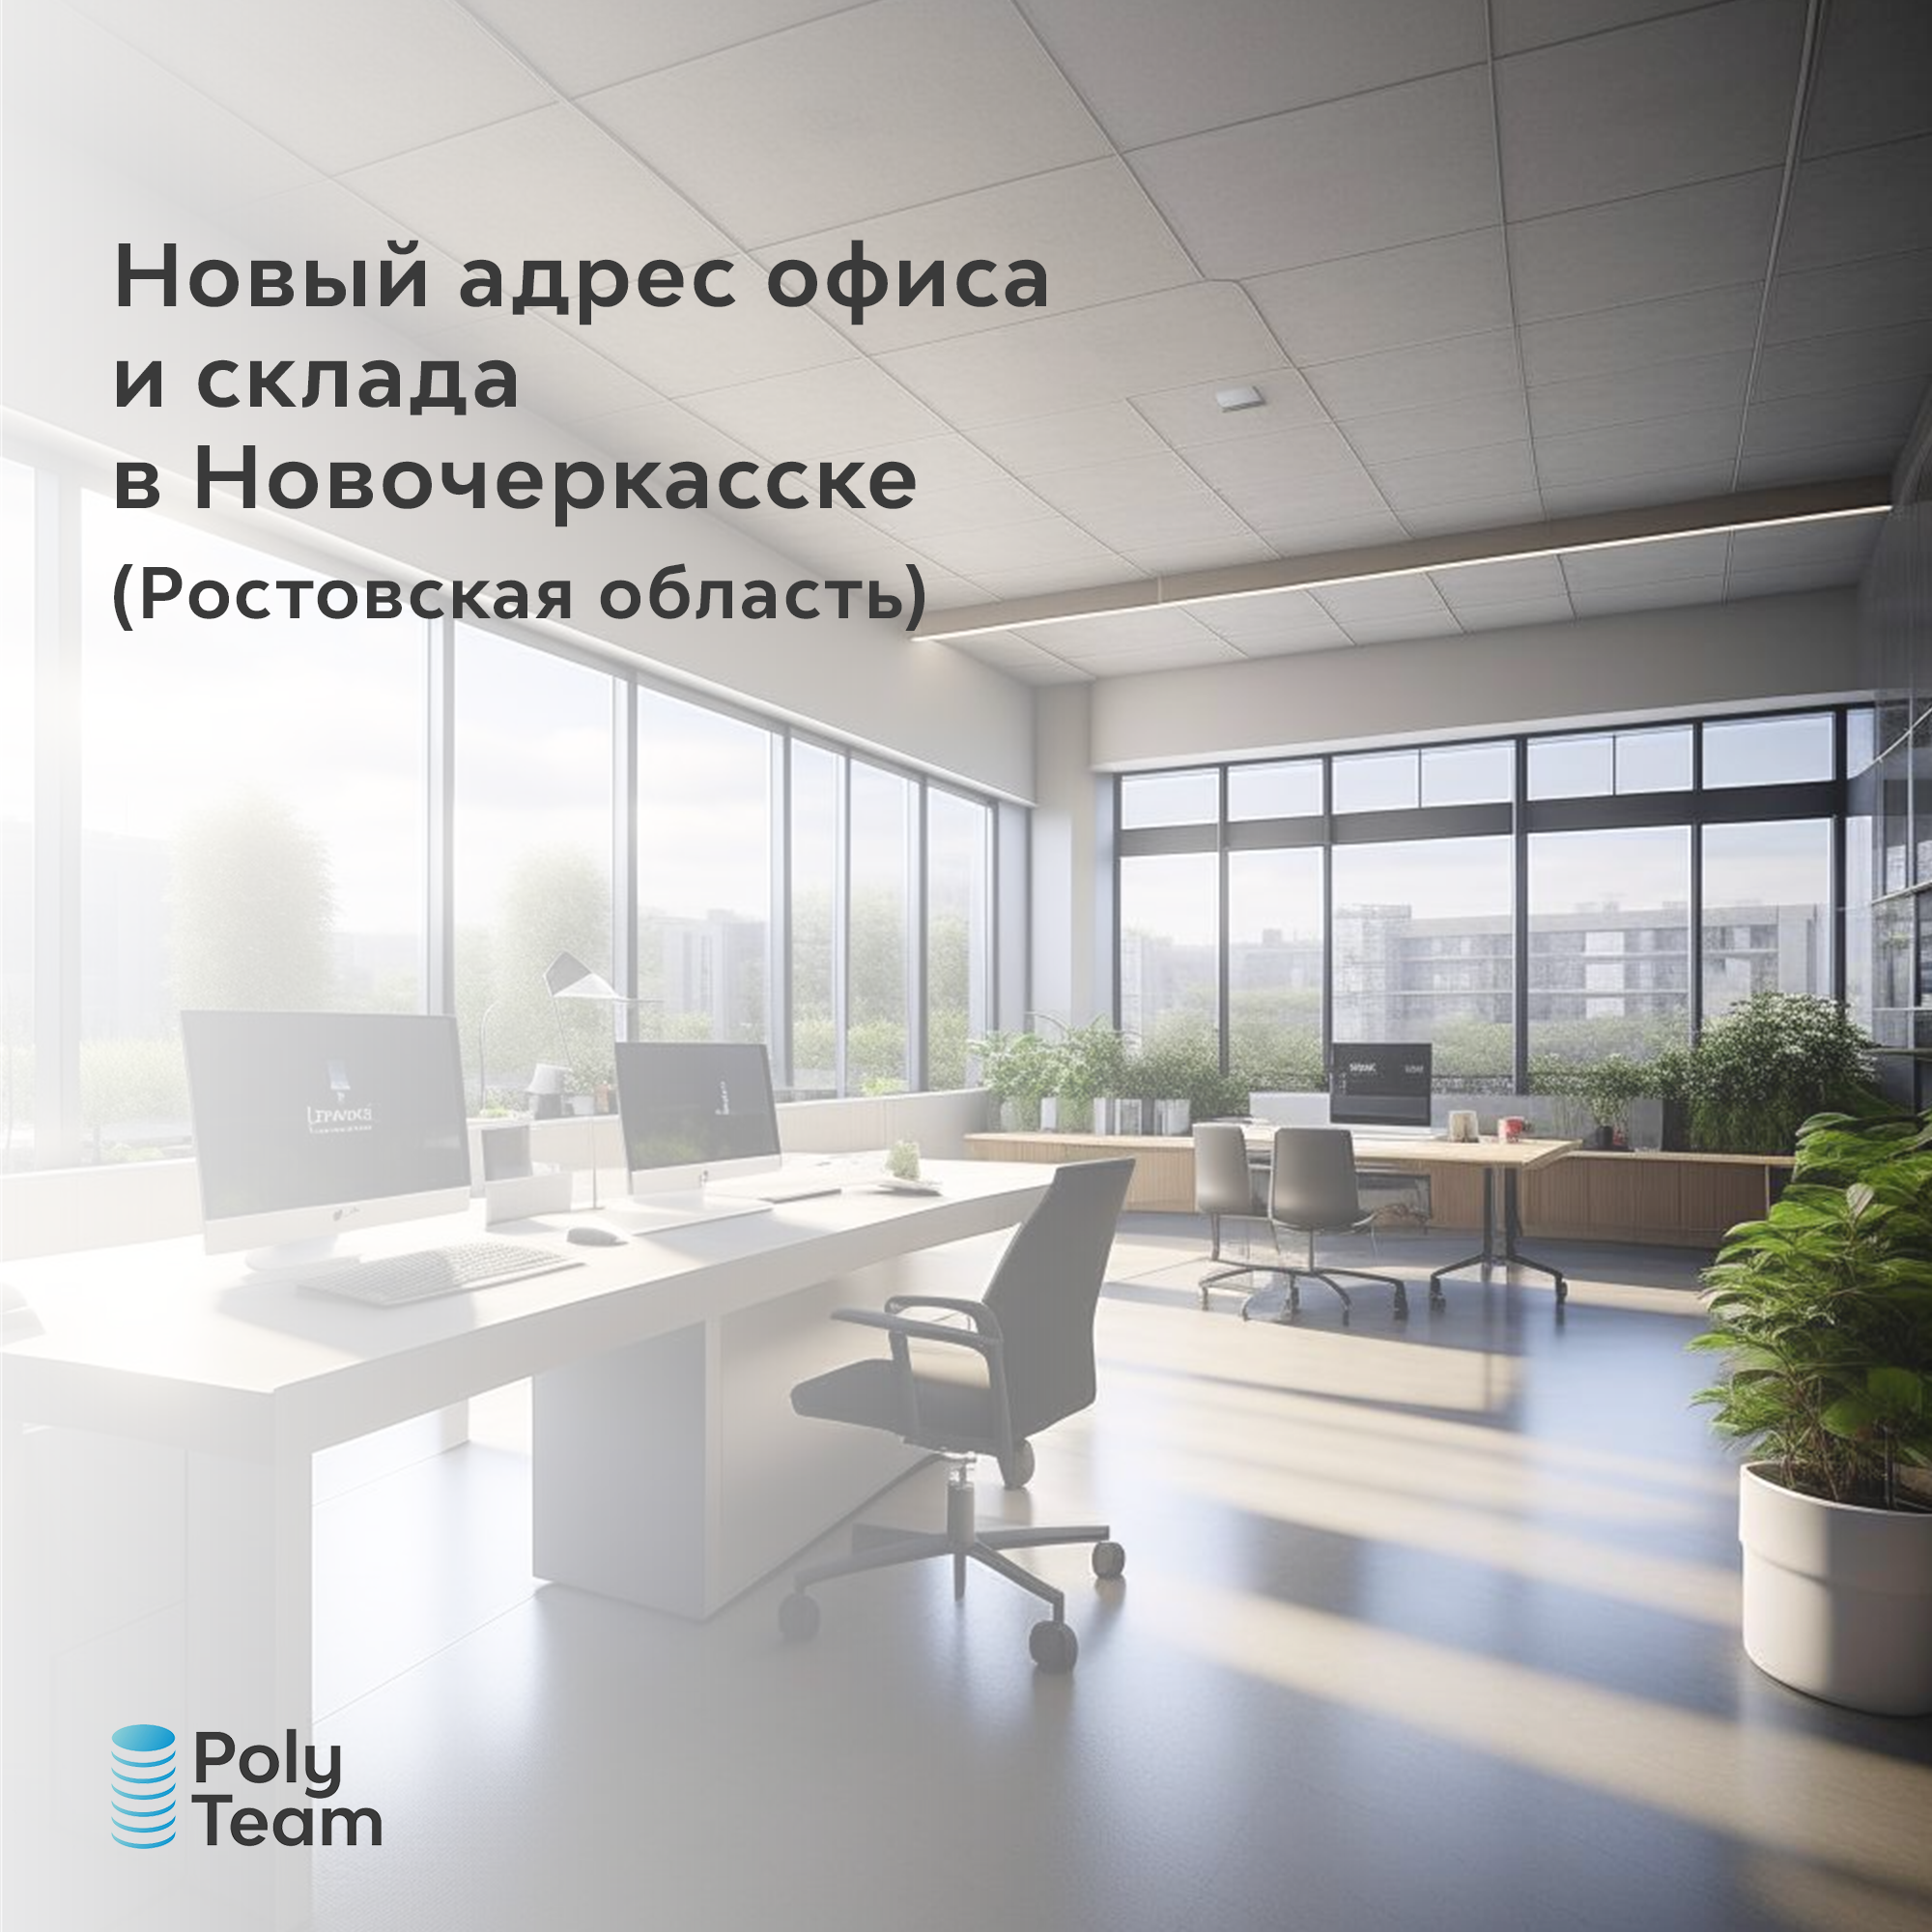 Новый адрес офиса и склада в Новочеркасске